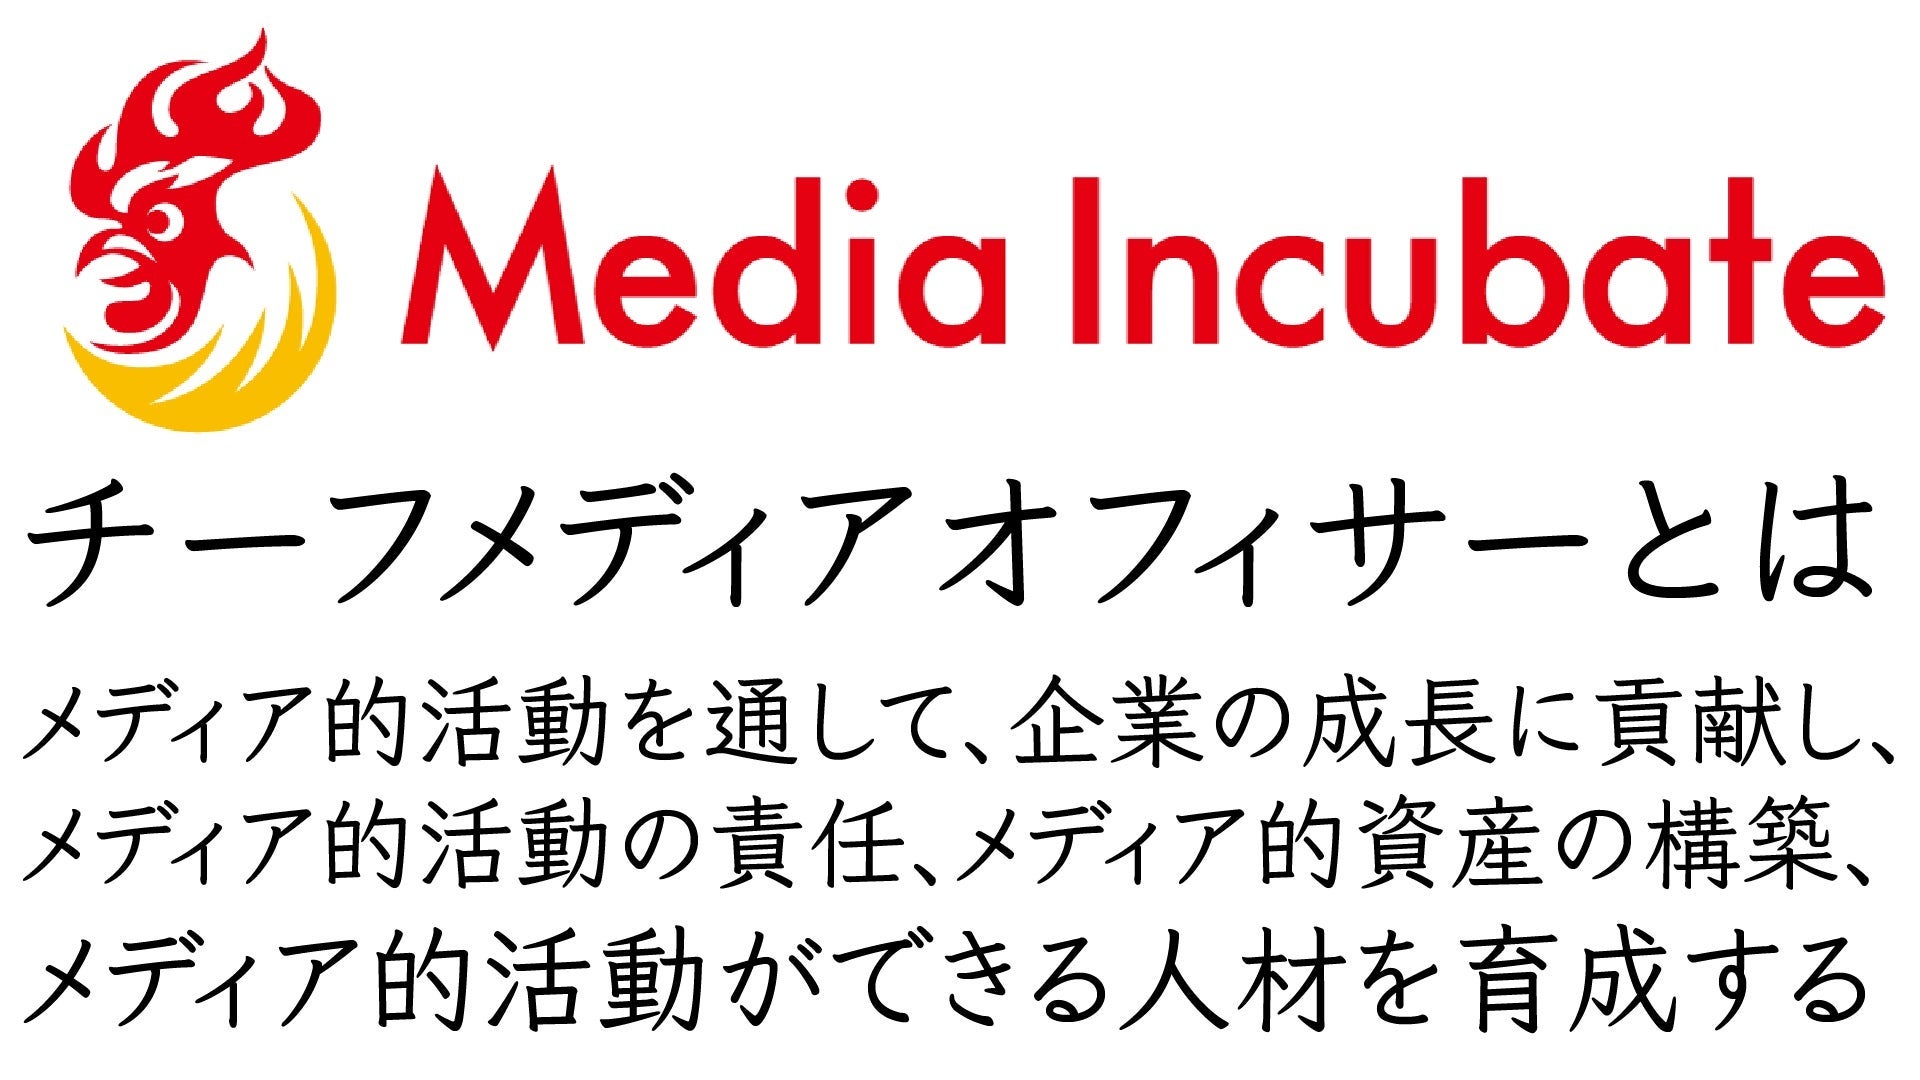 【50メディア以上の支援実績をもとにした『コミュニティドリブンマーケティング』】こどもの未来総研運営の「ママ広場」がマーケティングサービス開始。120名を突破した「東京都中央区ママ広場」とも連携のサブ画像8